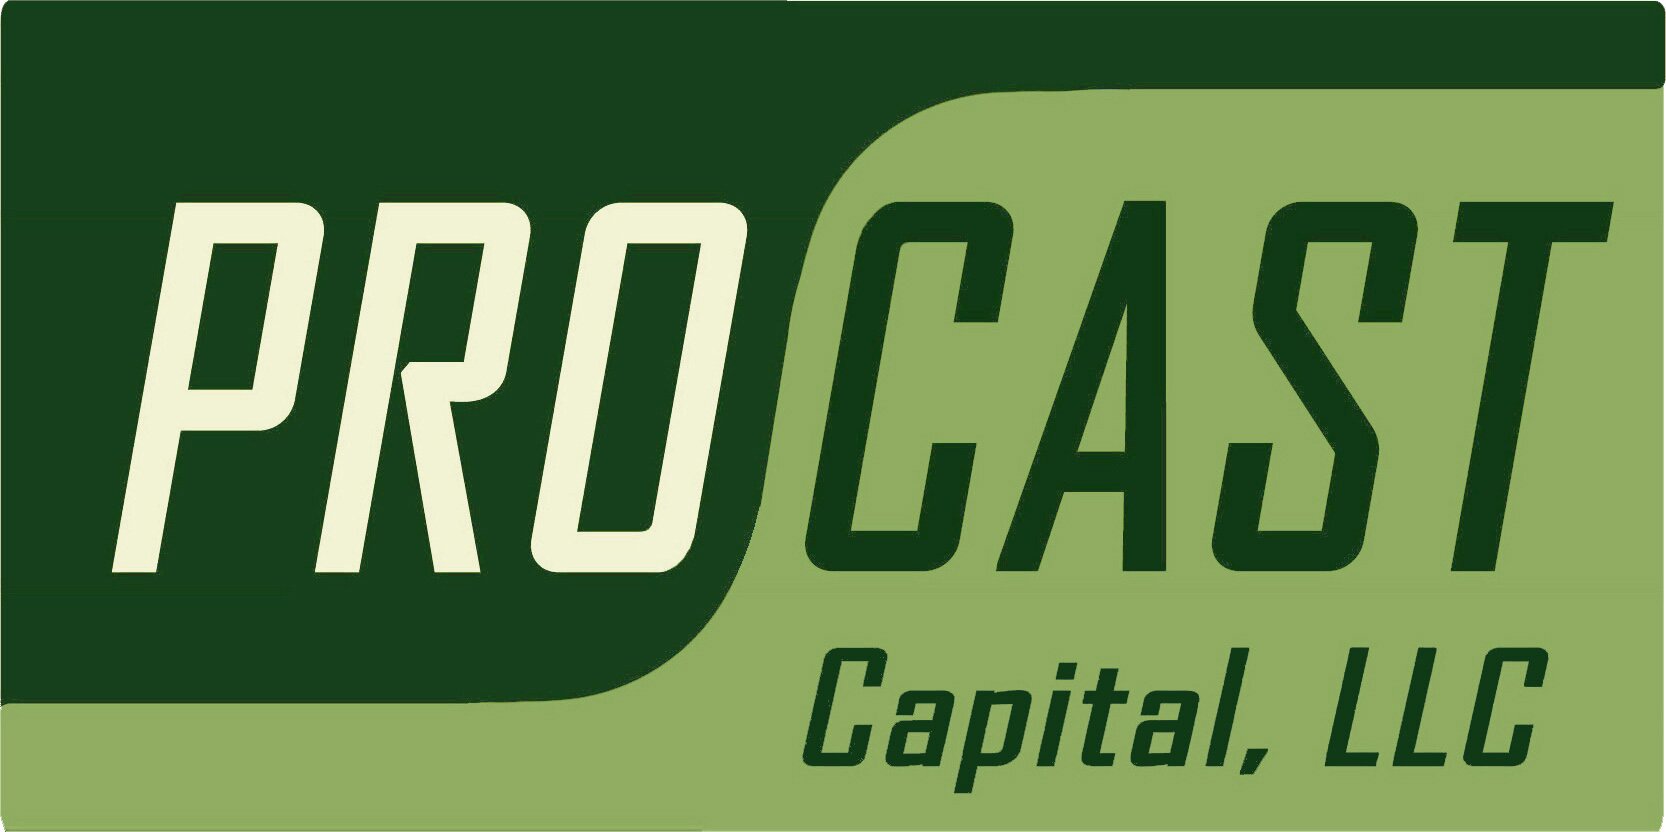 Procast Capital, LLC